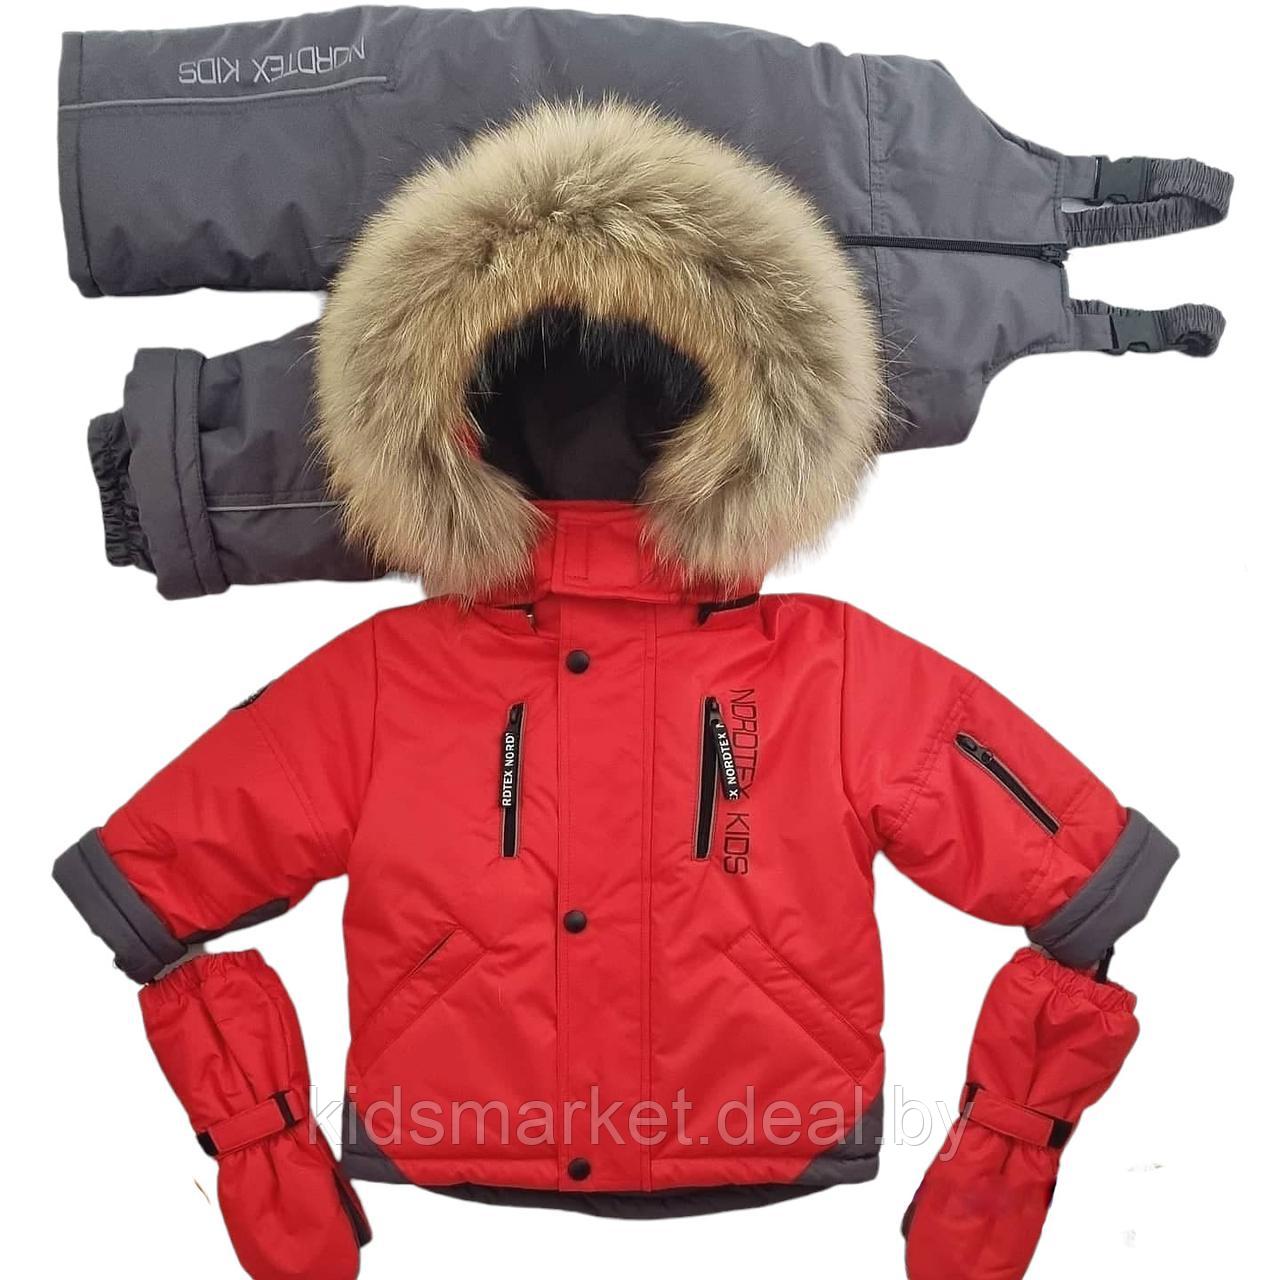 Детский зимний костюм (куртка + комбинезон) Nordtex Kids мембрана красный (Размеры: 86, 92)